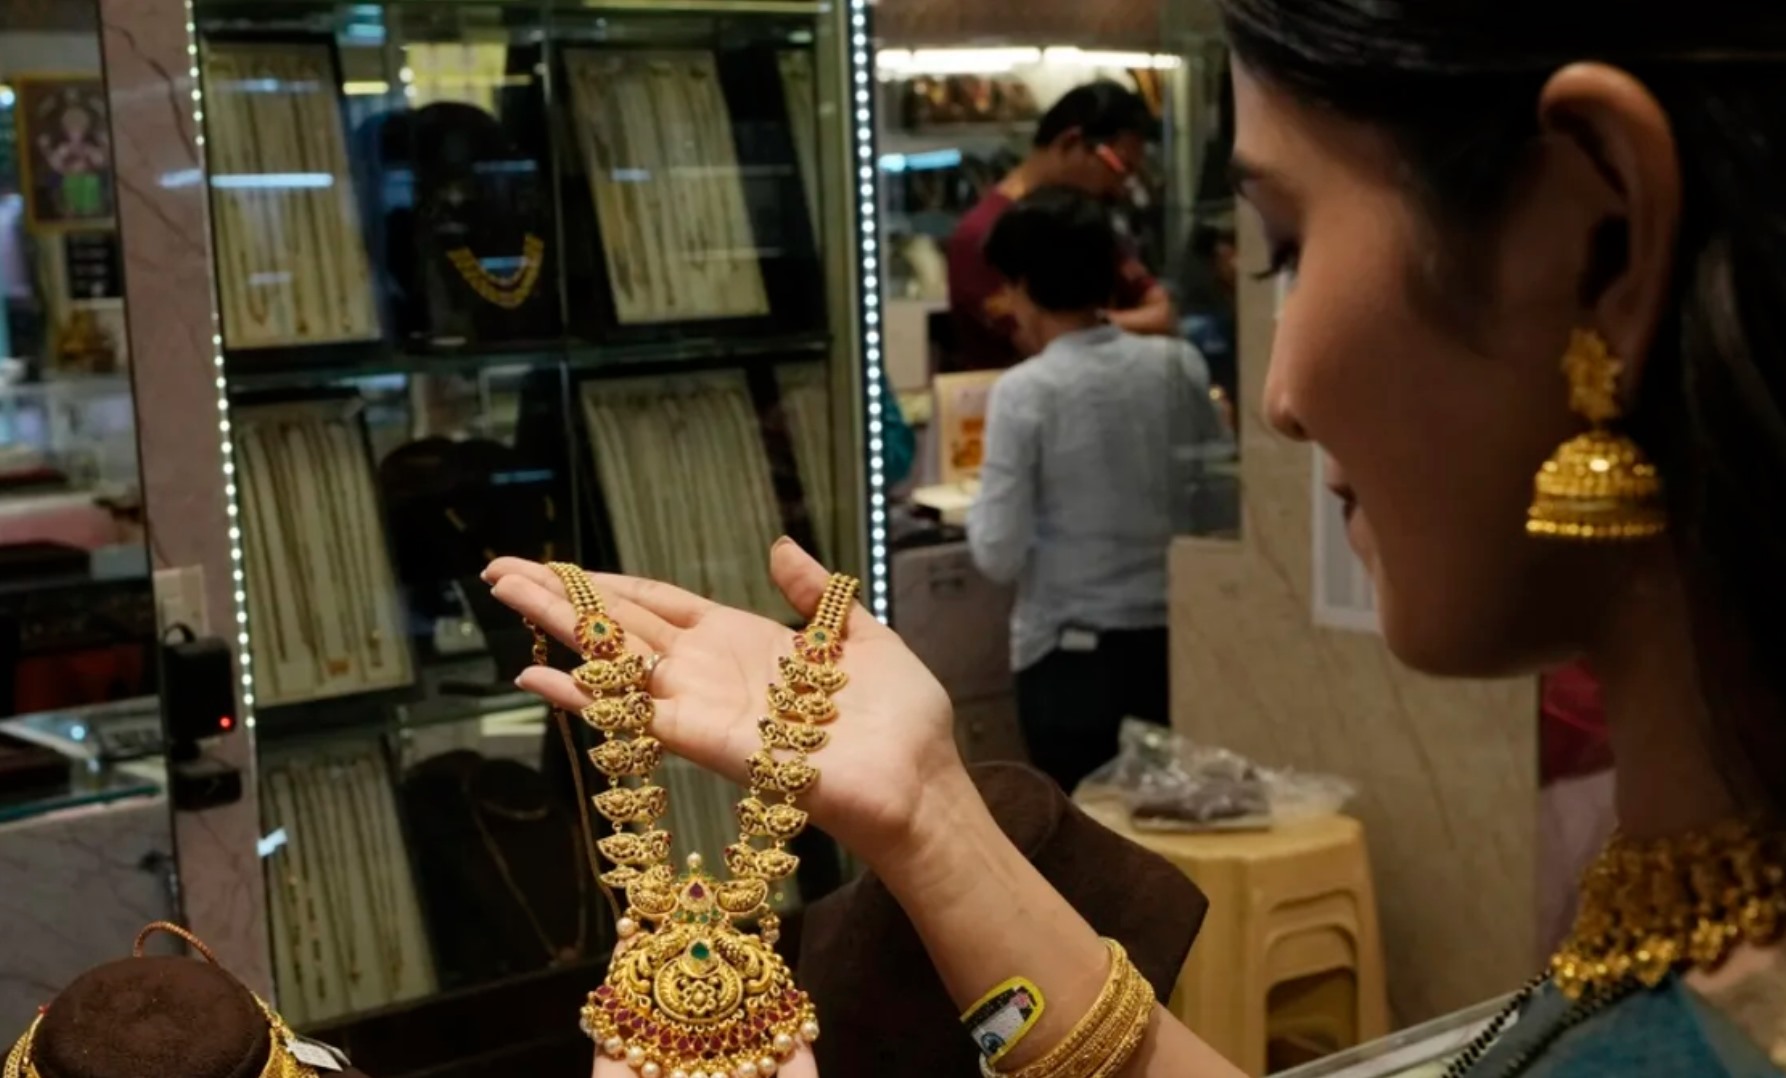 Vàng trang sức được ưa chuộng ở Ấn Độ. Ảnh: AFP